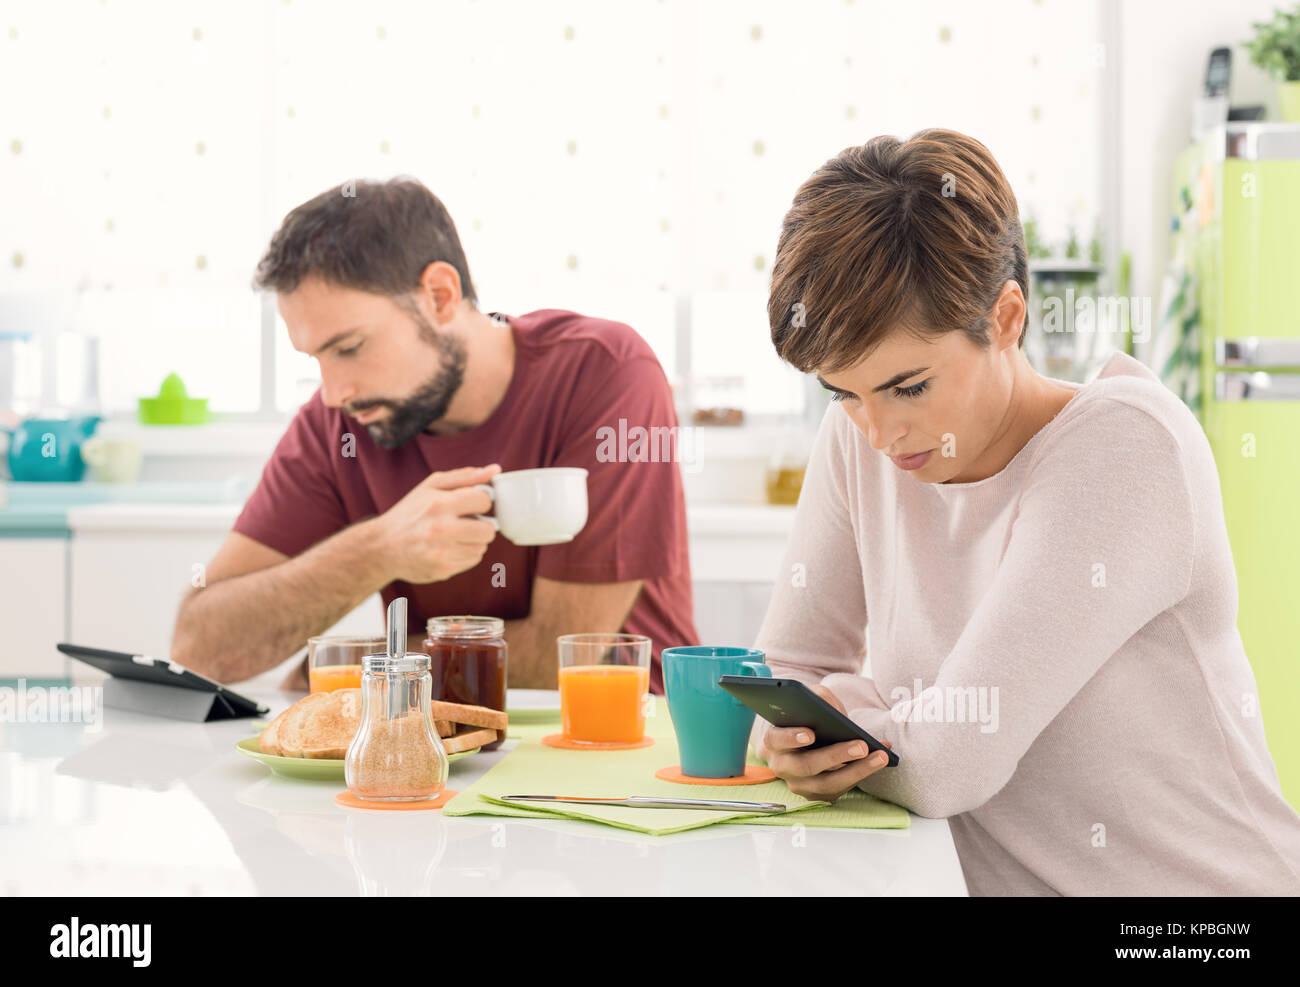 Junges Paar Frühstück zu Hause haben, werden Sie mit mobilen Geräten, Social Networking und zur Vermeidung von Wechselwirkungen: Neue Technologien und Soziale isolatio Stockfoto